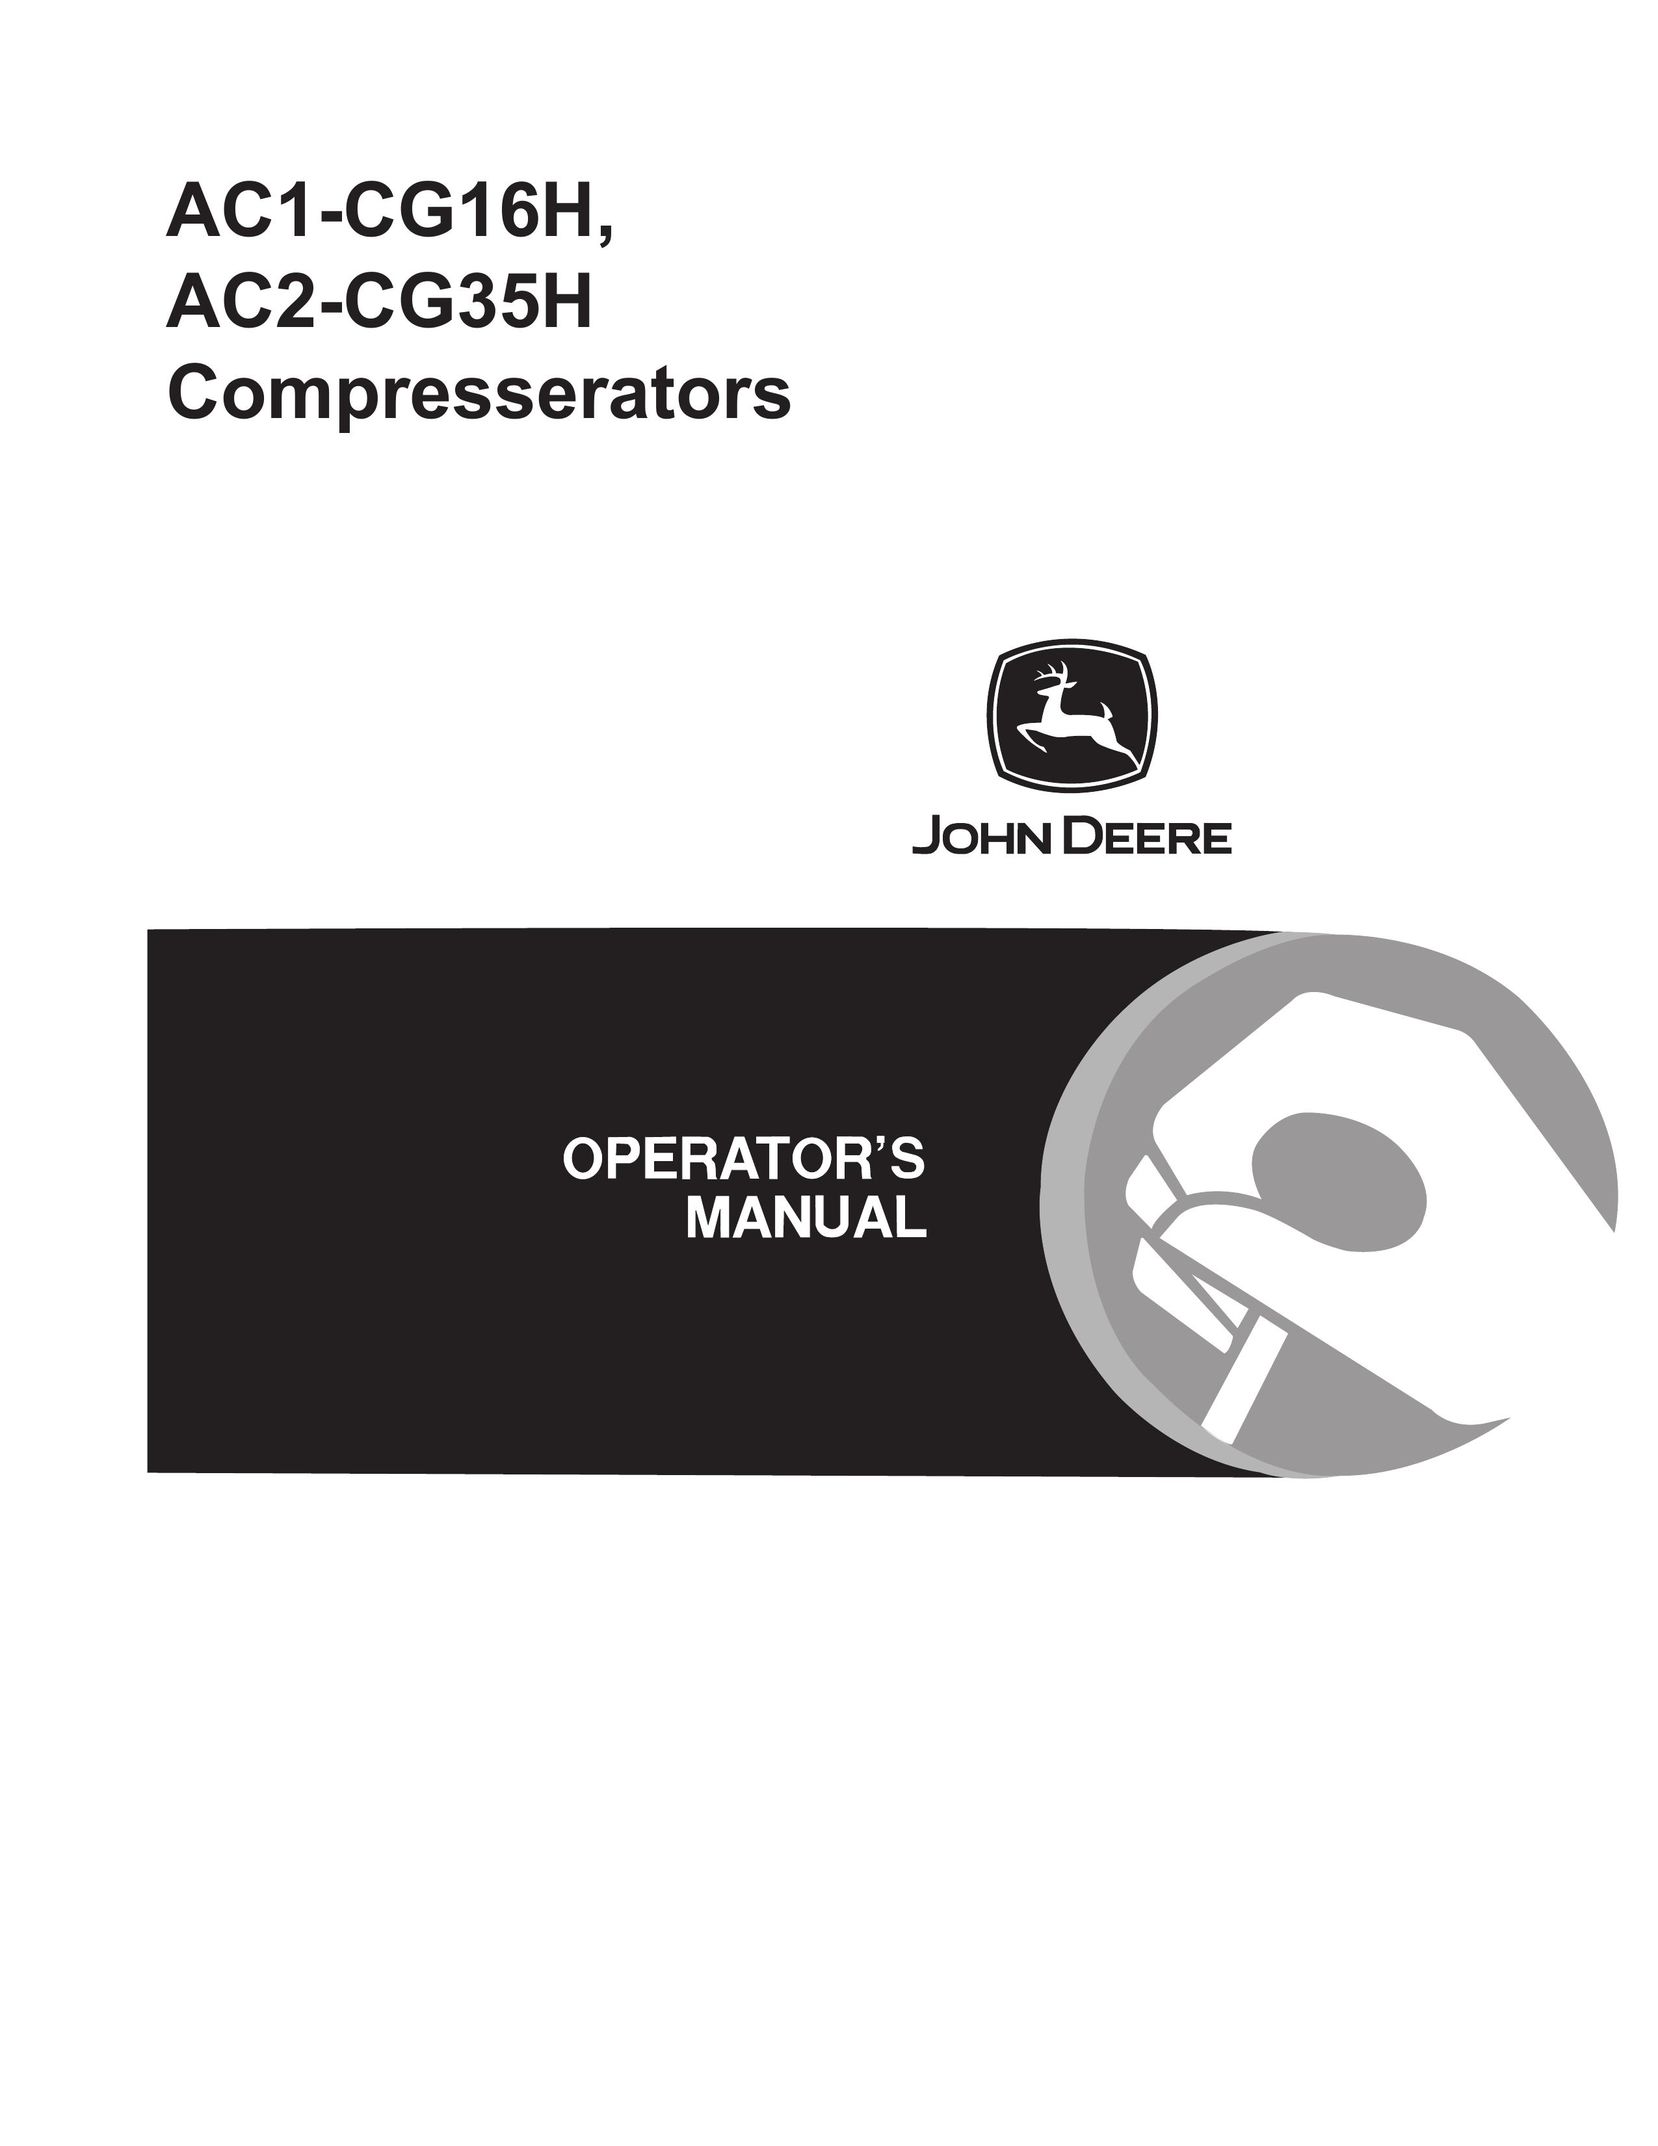 John Deere AC1-CG16H Air Compressor User Manual